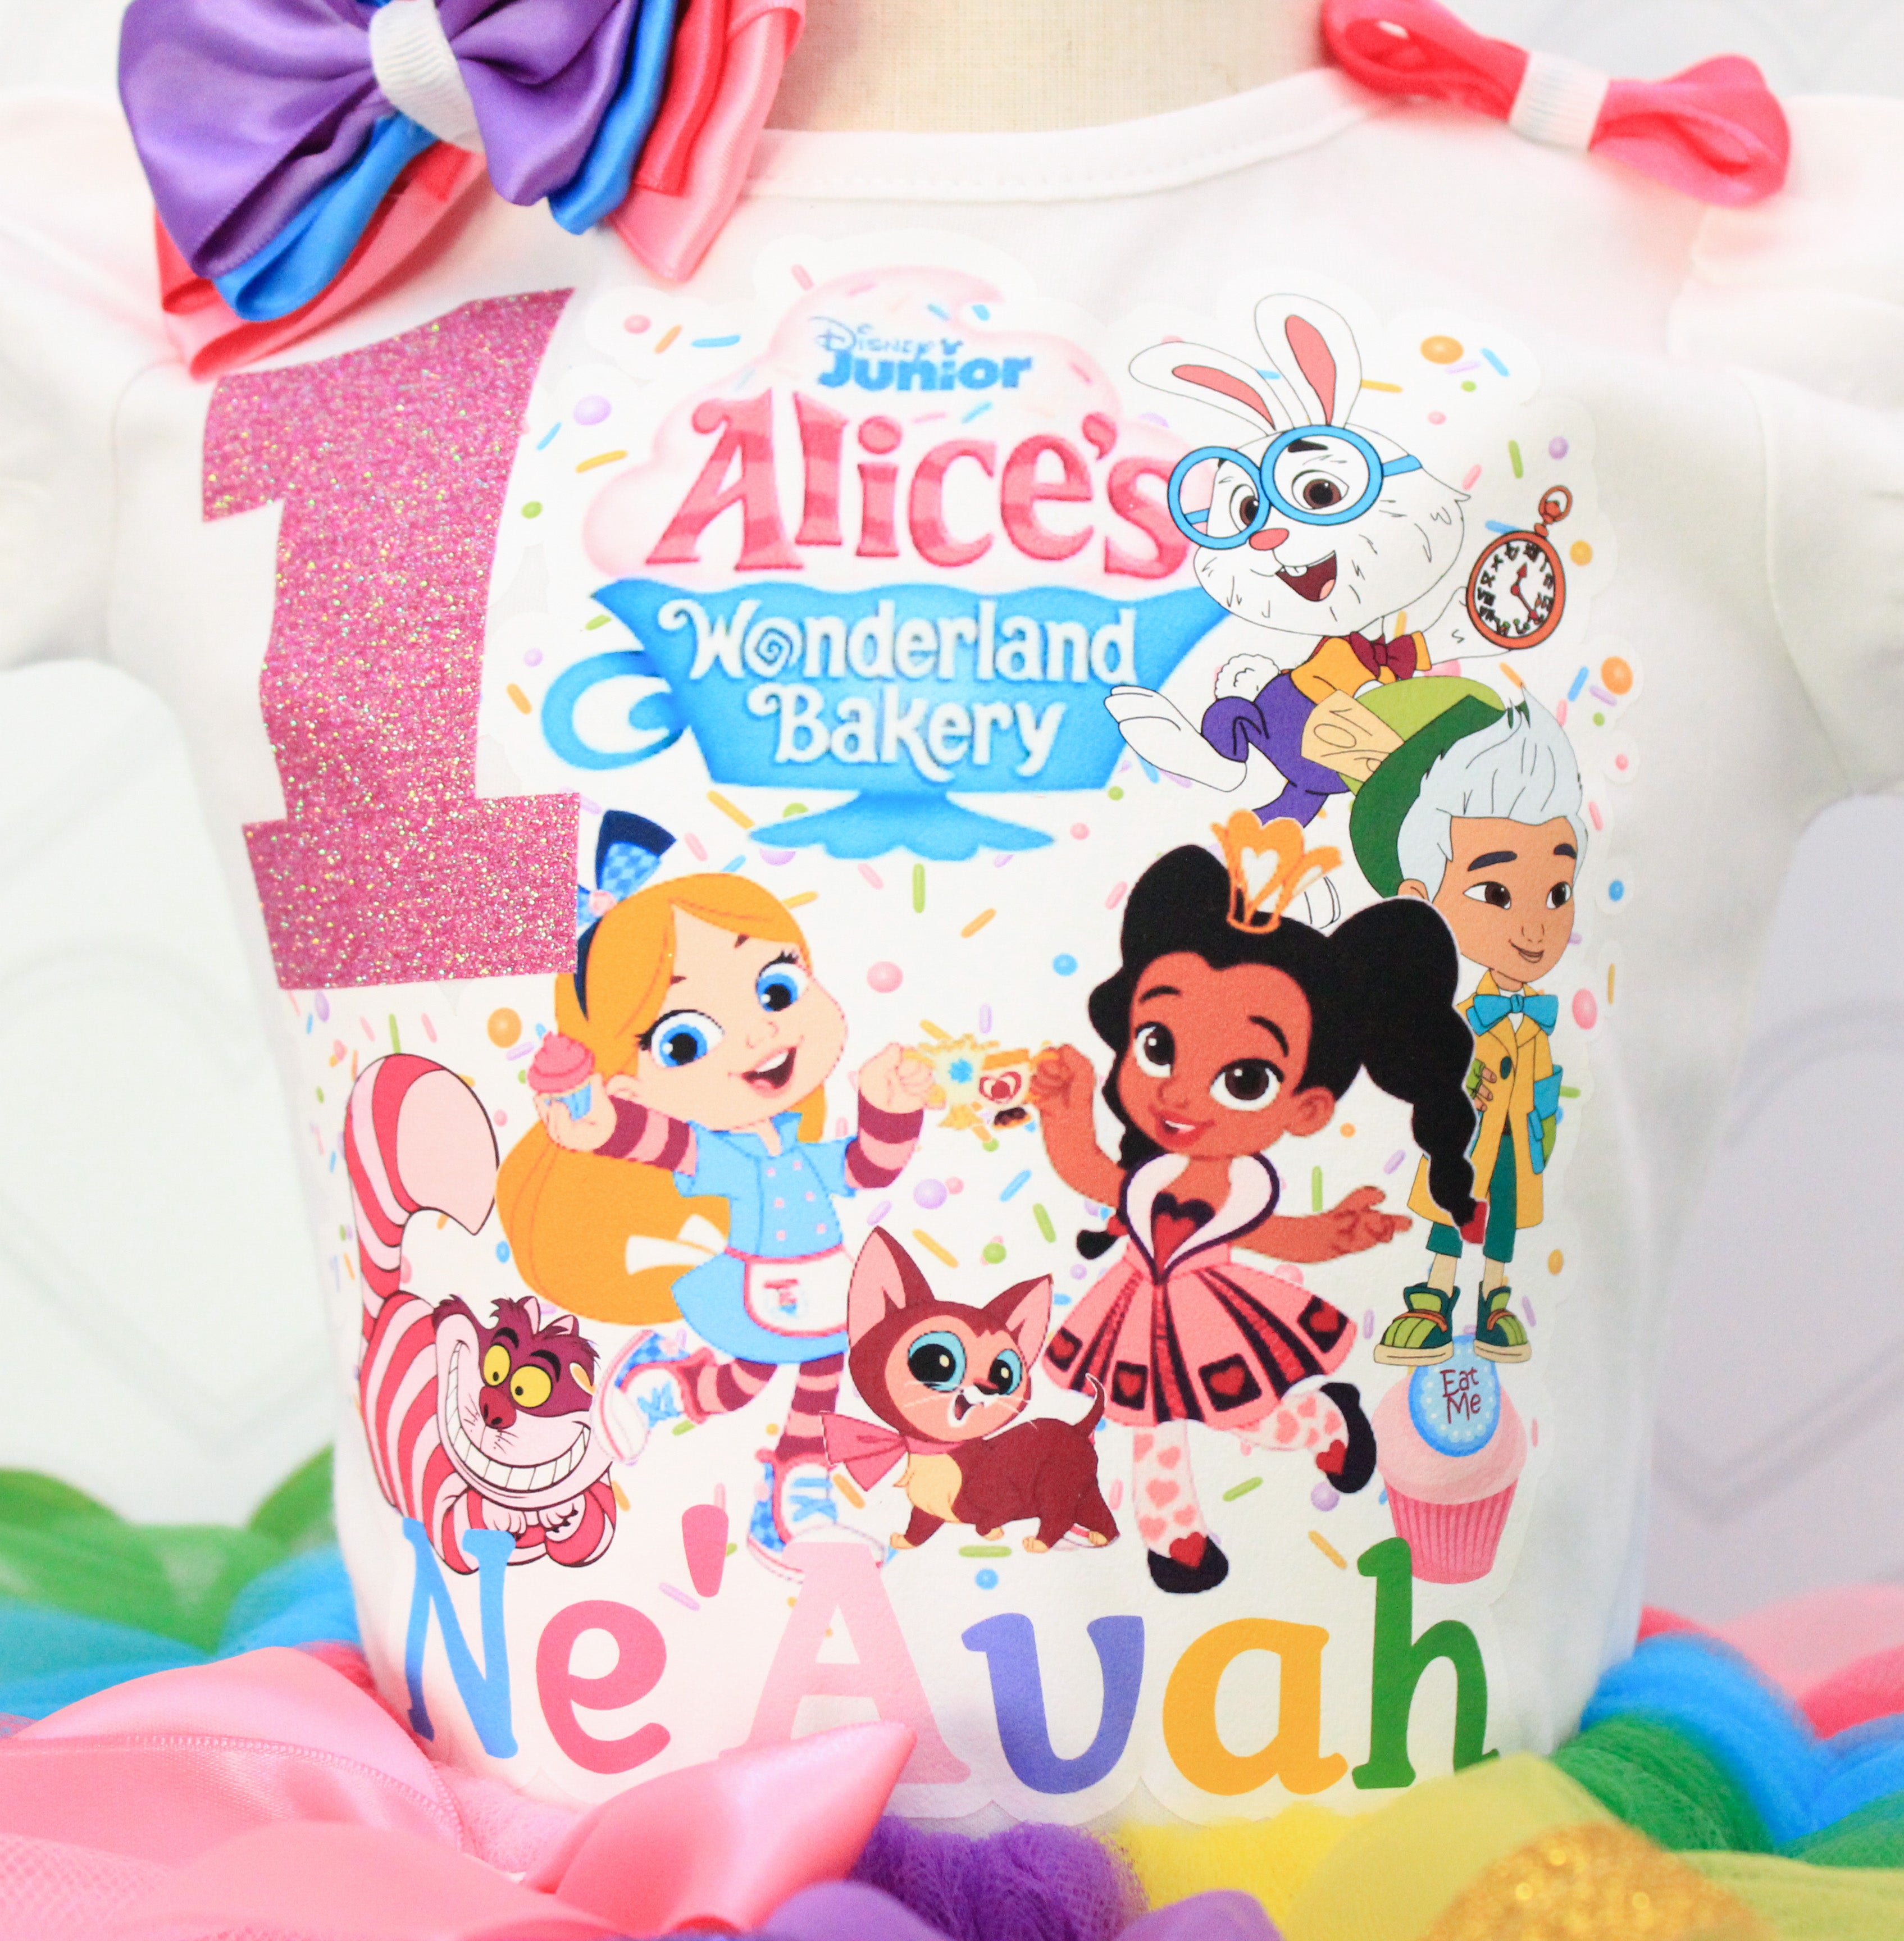 Alice wonderland Bakery tutu set-Alice wonderland Bakery outfit-Alice wonderland Bakery dress-Alice wonderland Bakery birthday